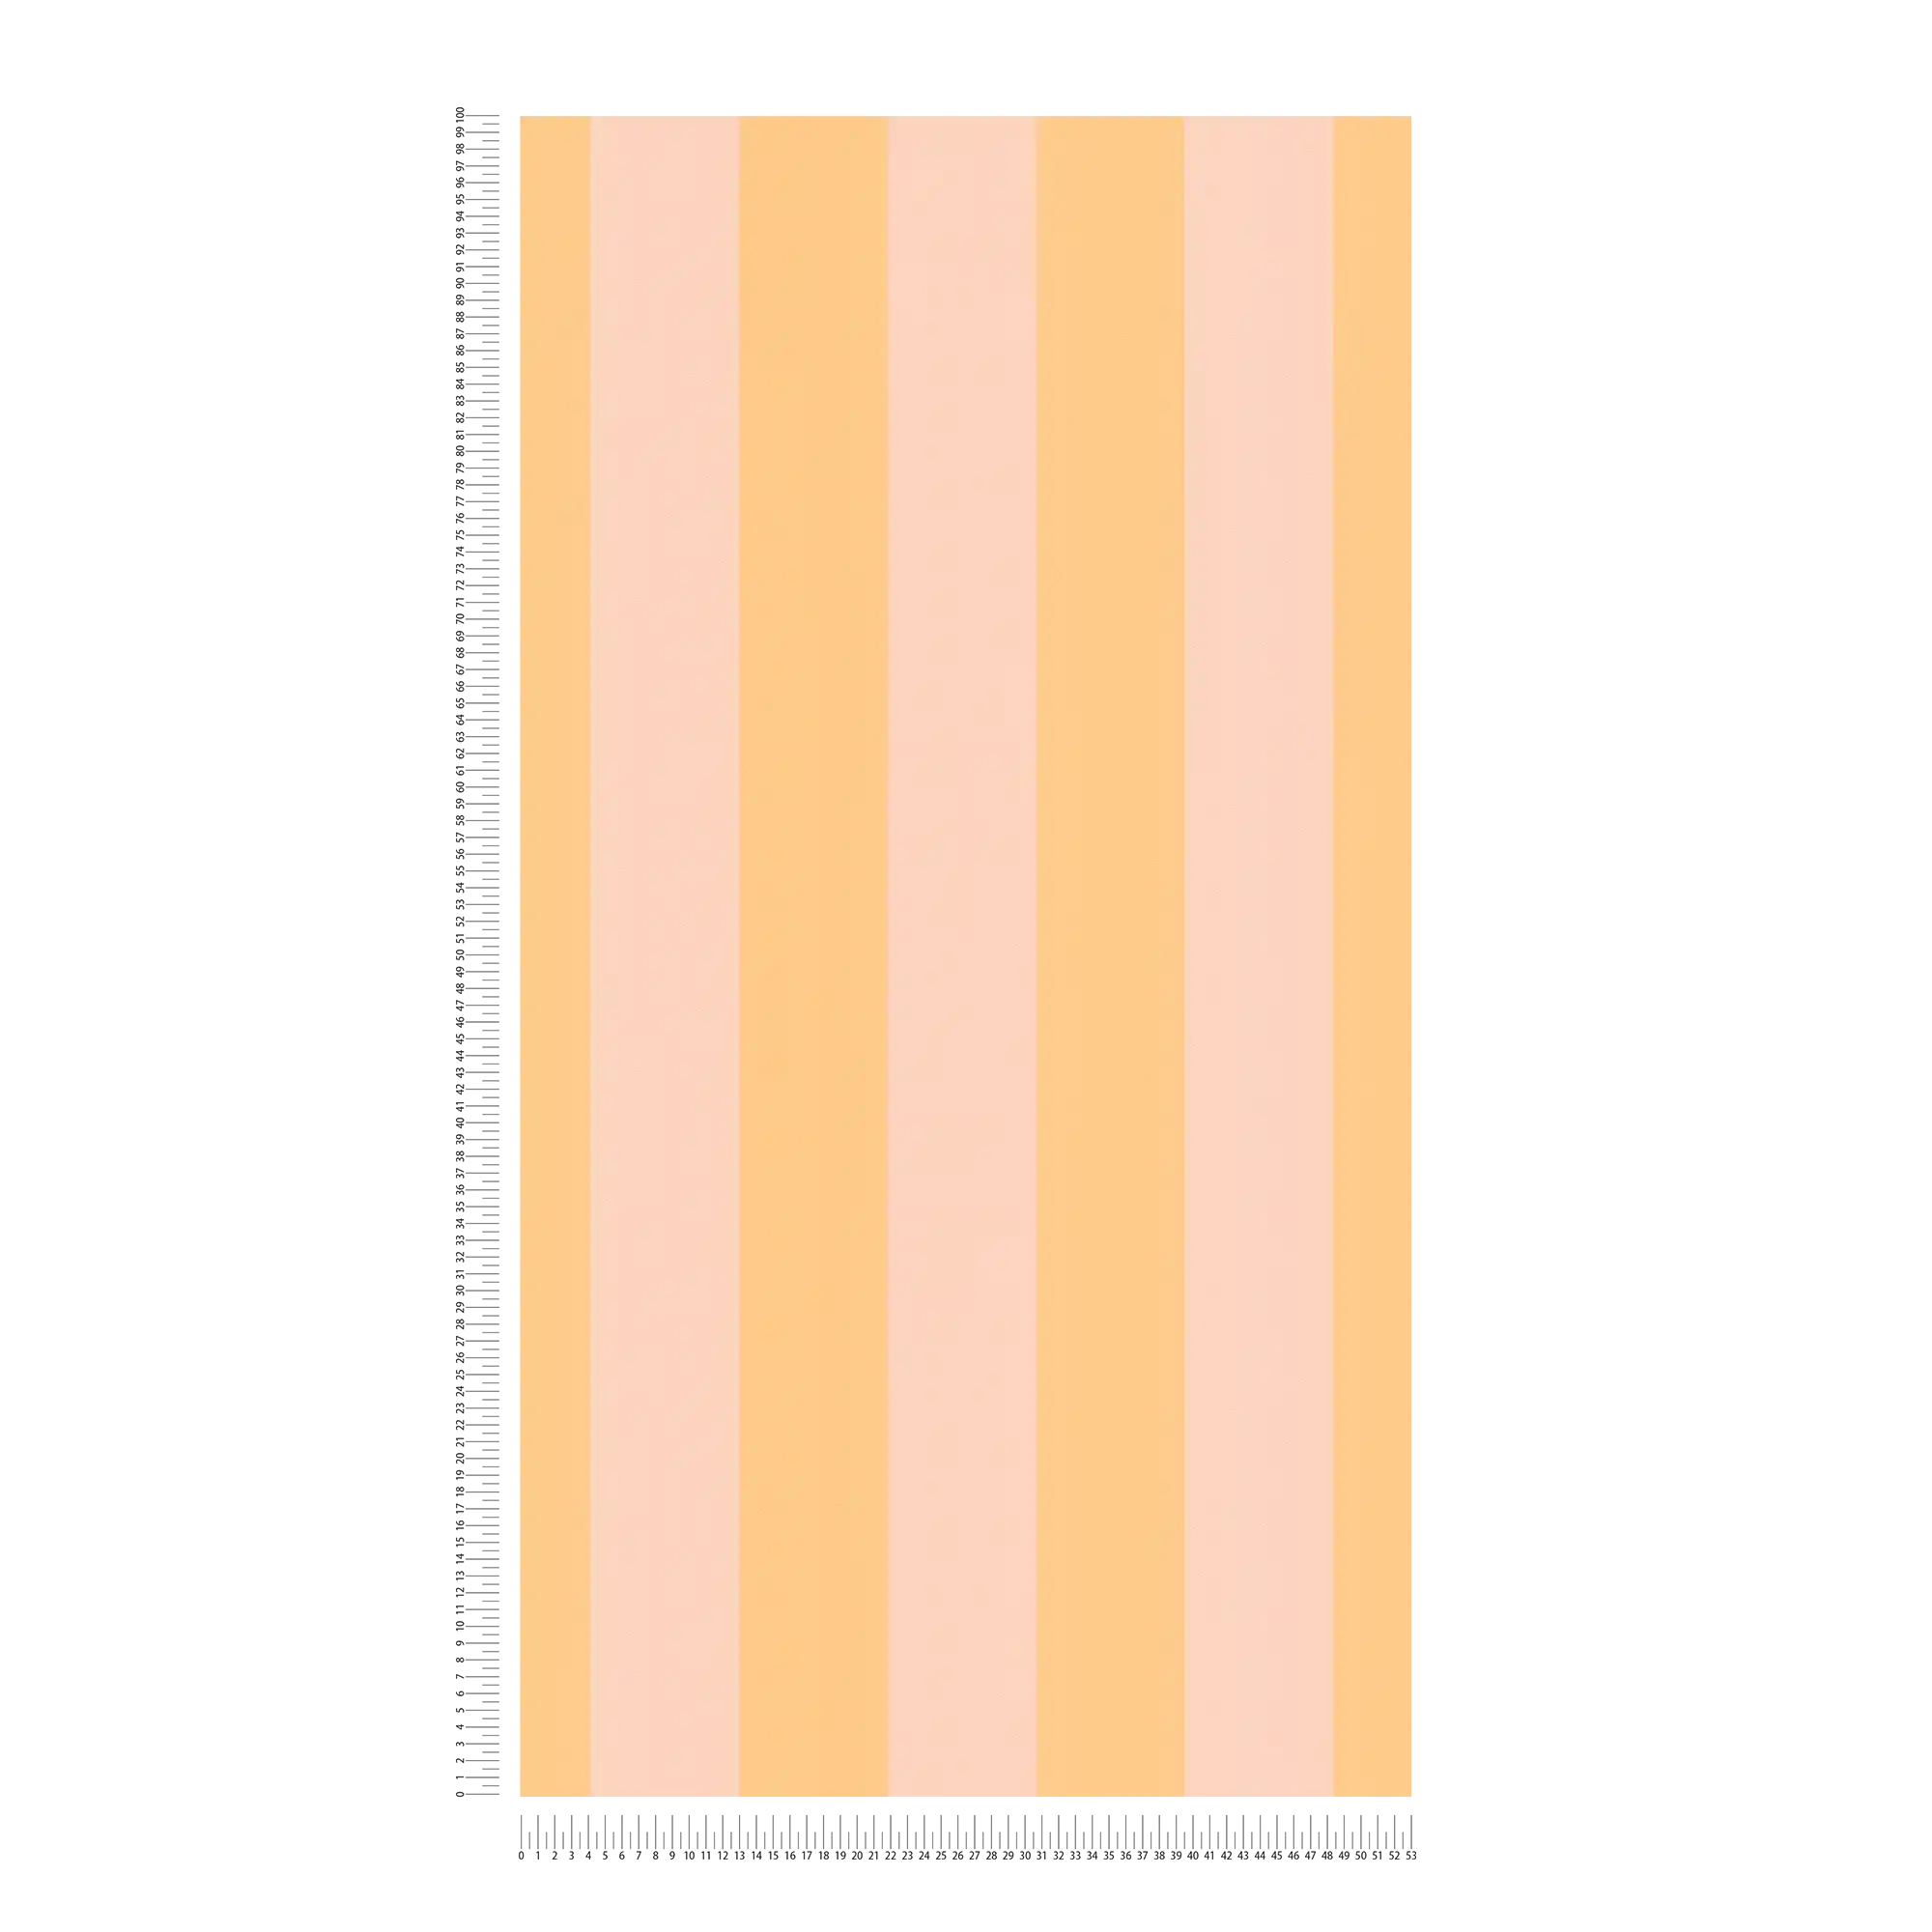             Vliestapete mit Blockstreifen in sanften Farbtönen – Orange, Rosa
        